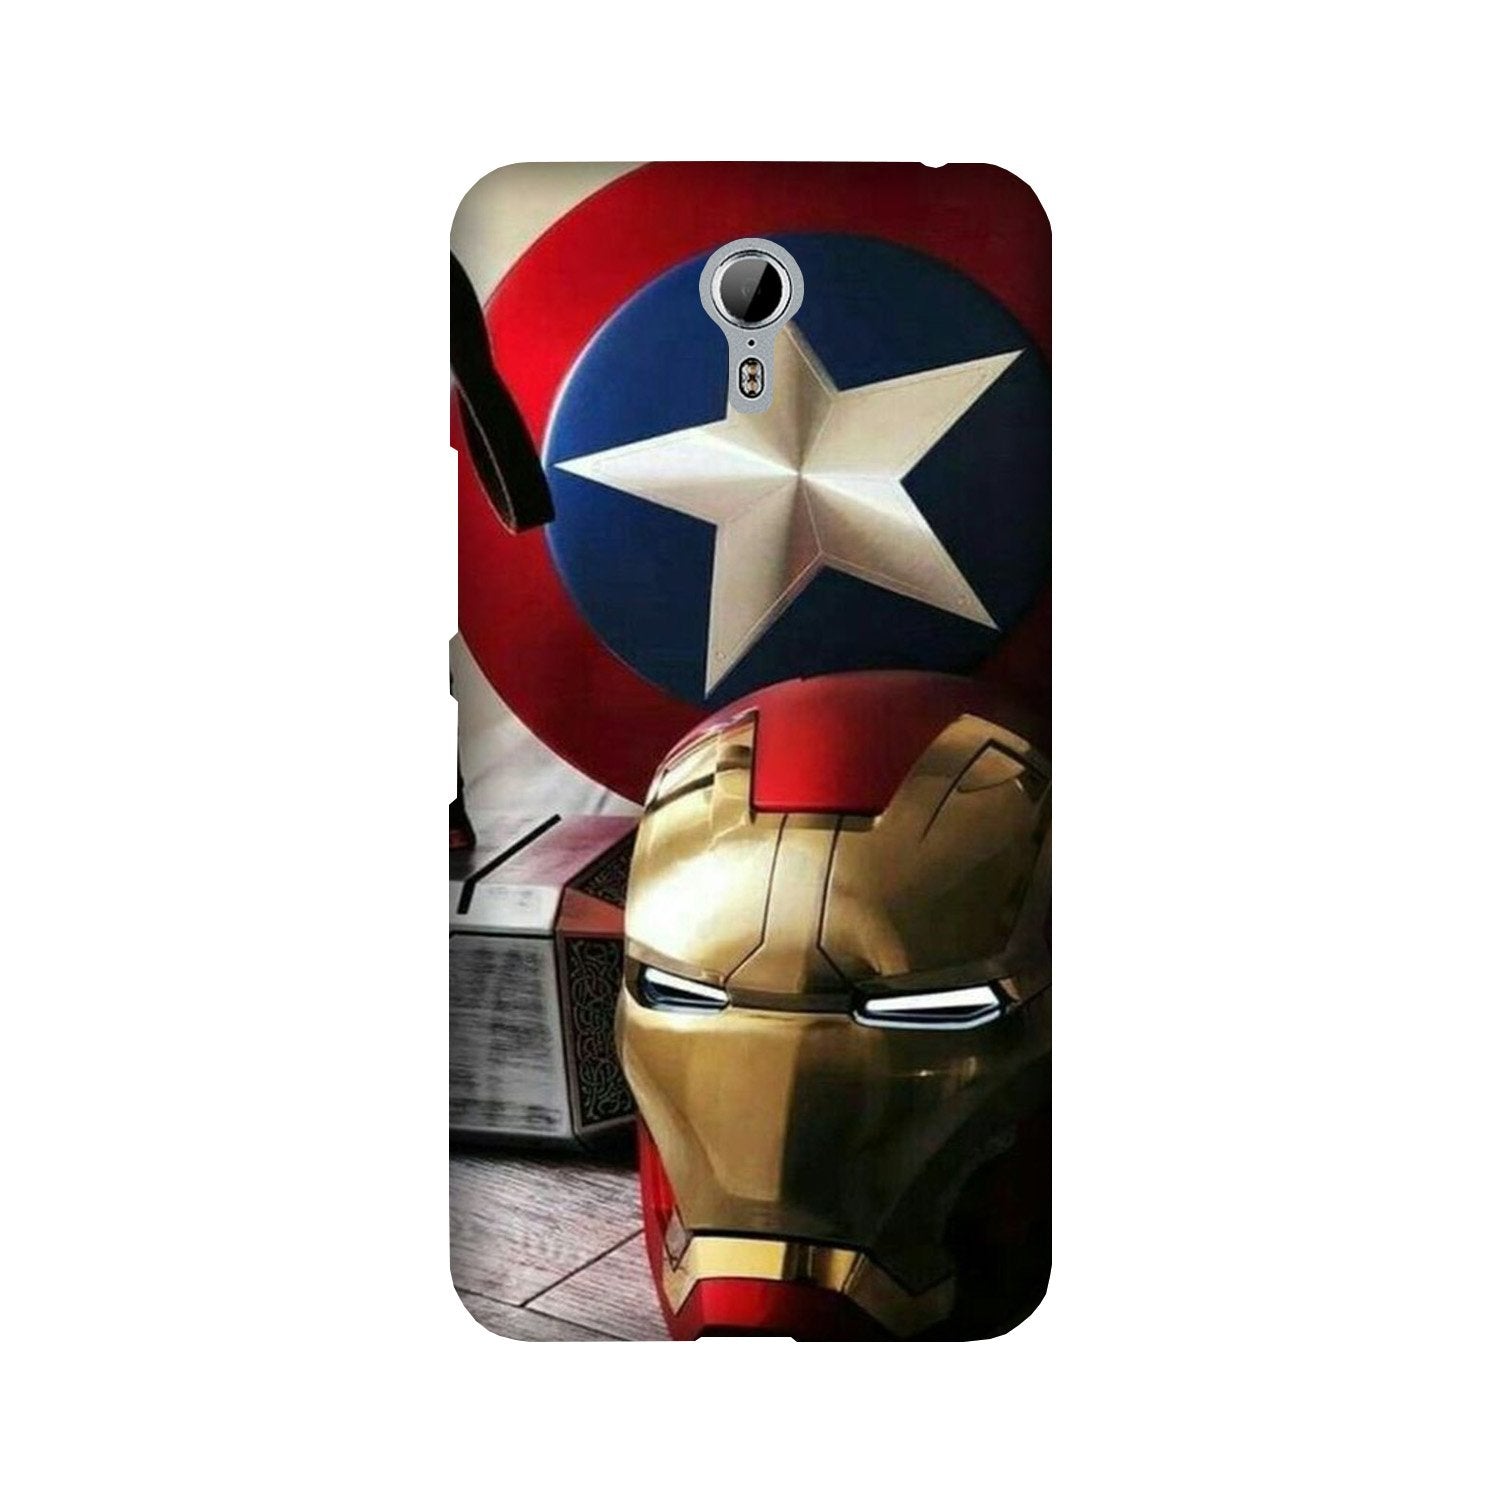 Ironman Captain America Case for Lenovo Zuk Z1 (Design No. 254)